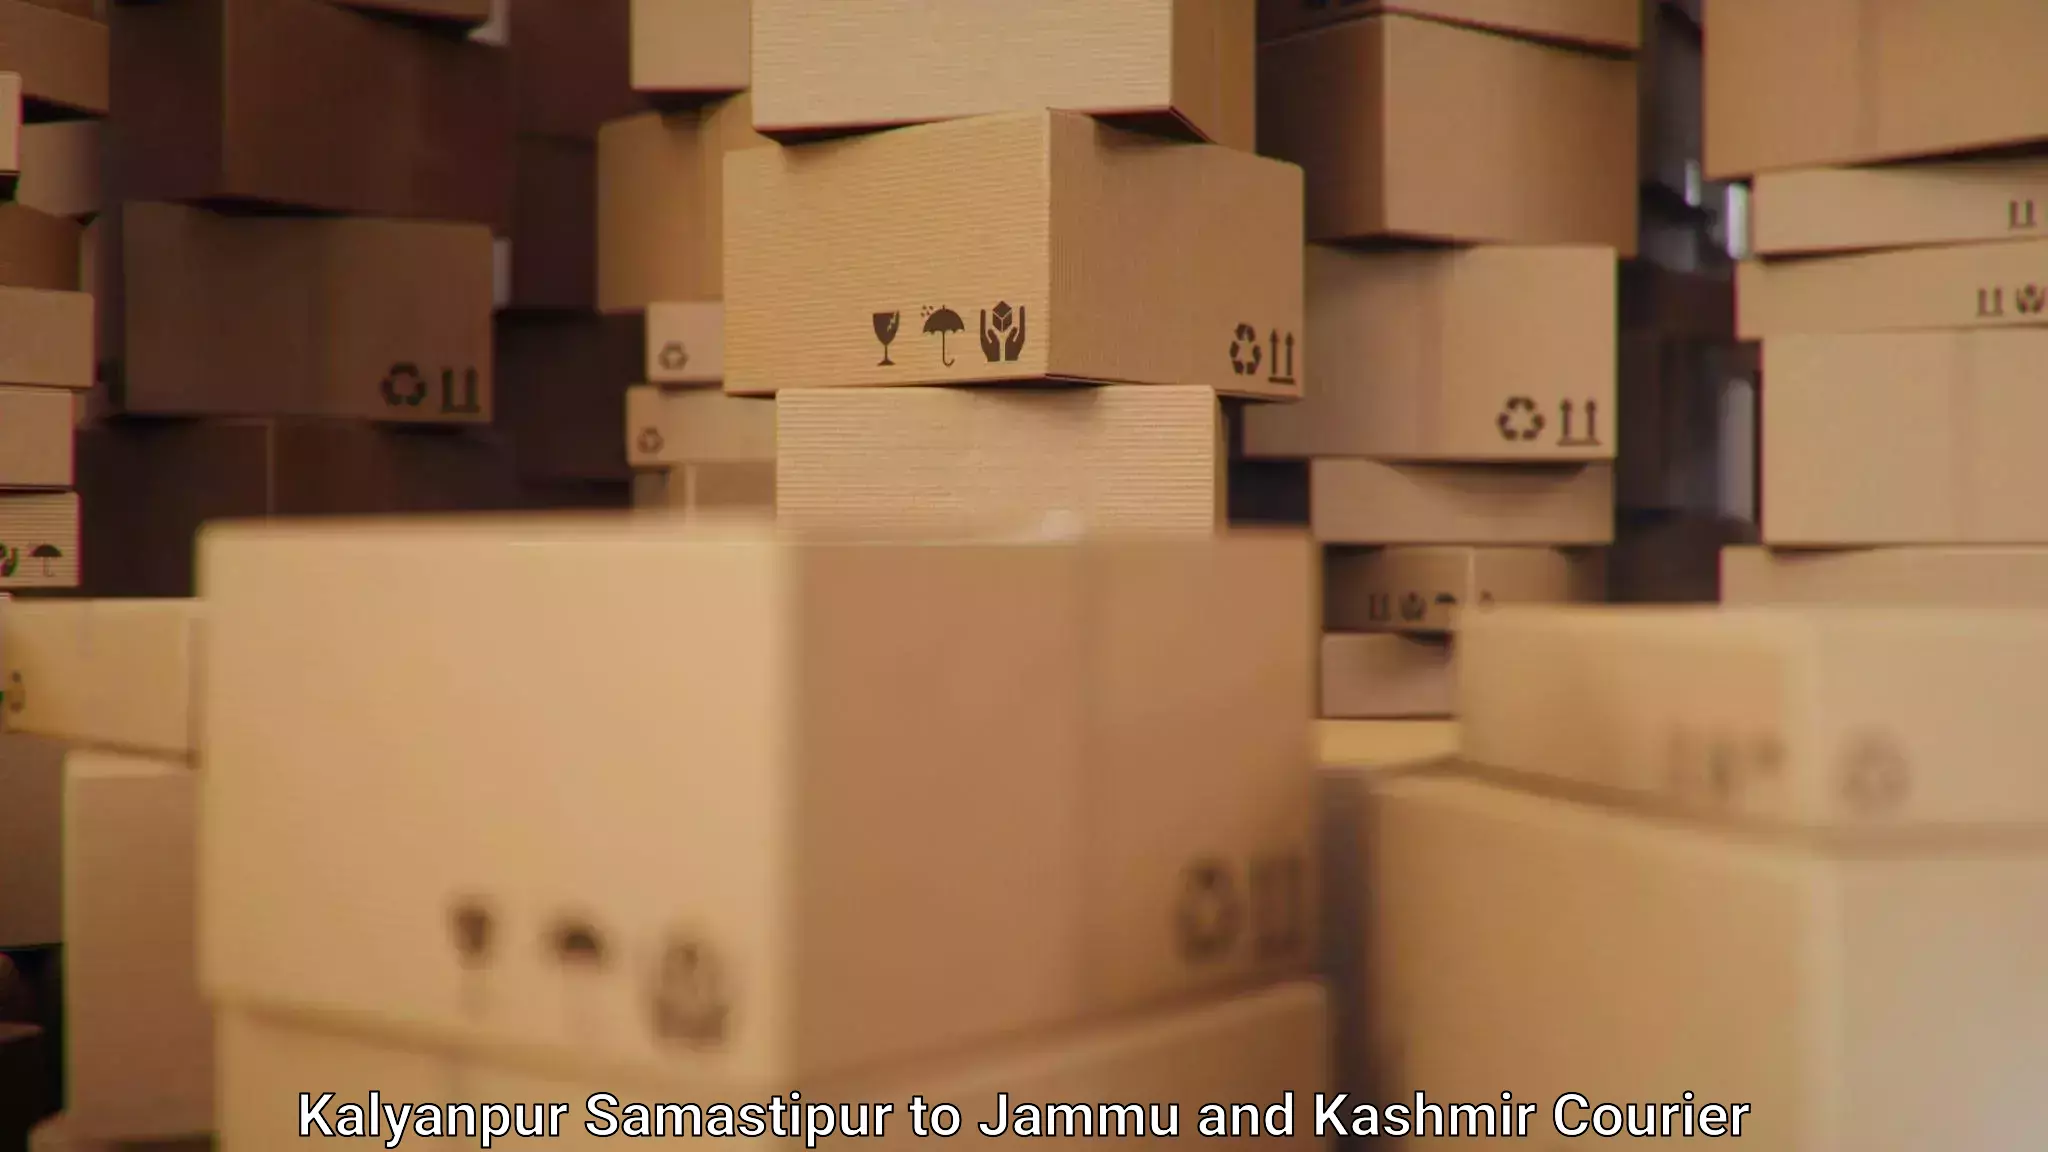 Rapid freight solutions Kalyanpur Samastipur to IIT Jammu